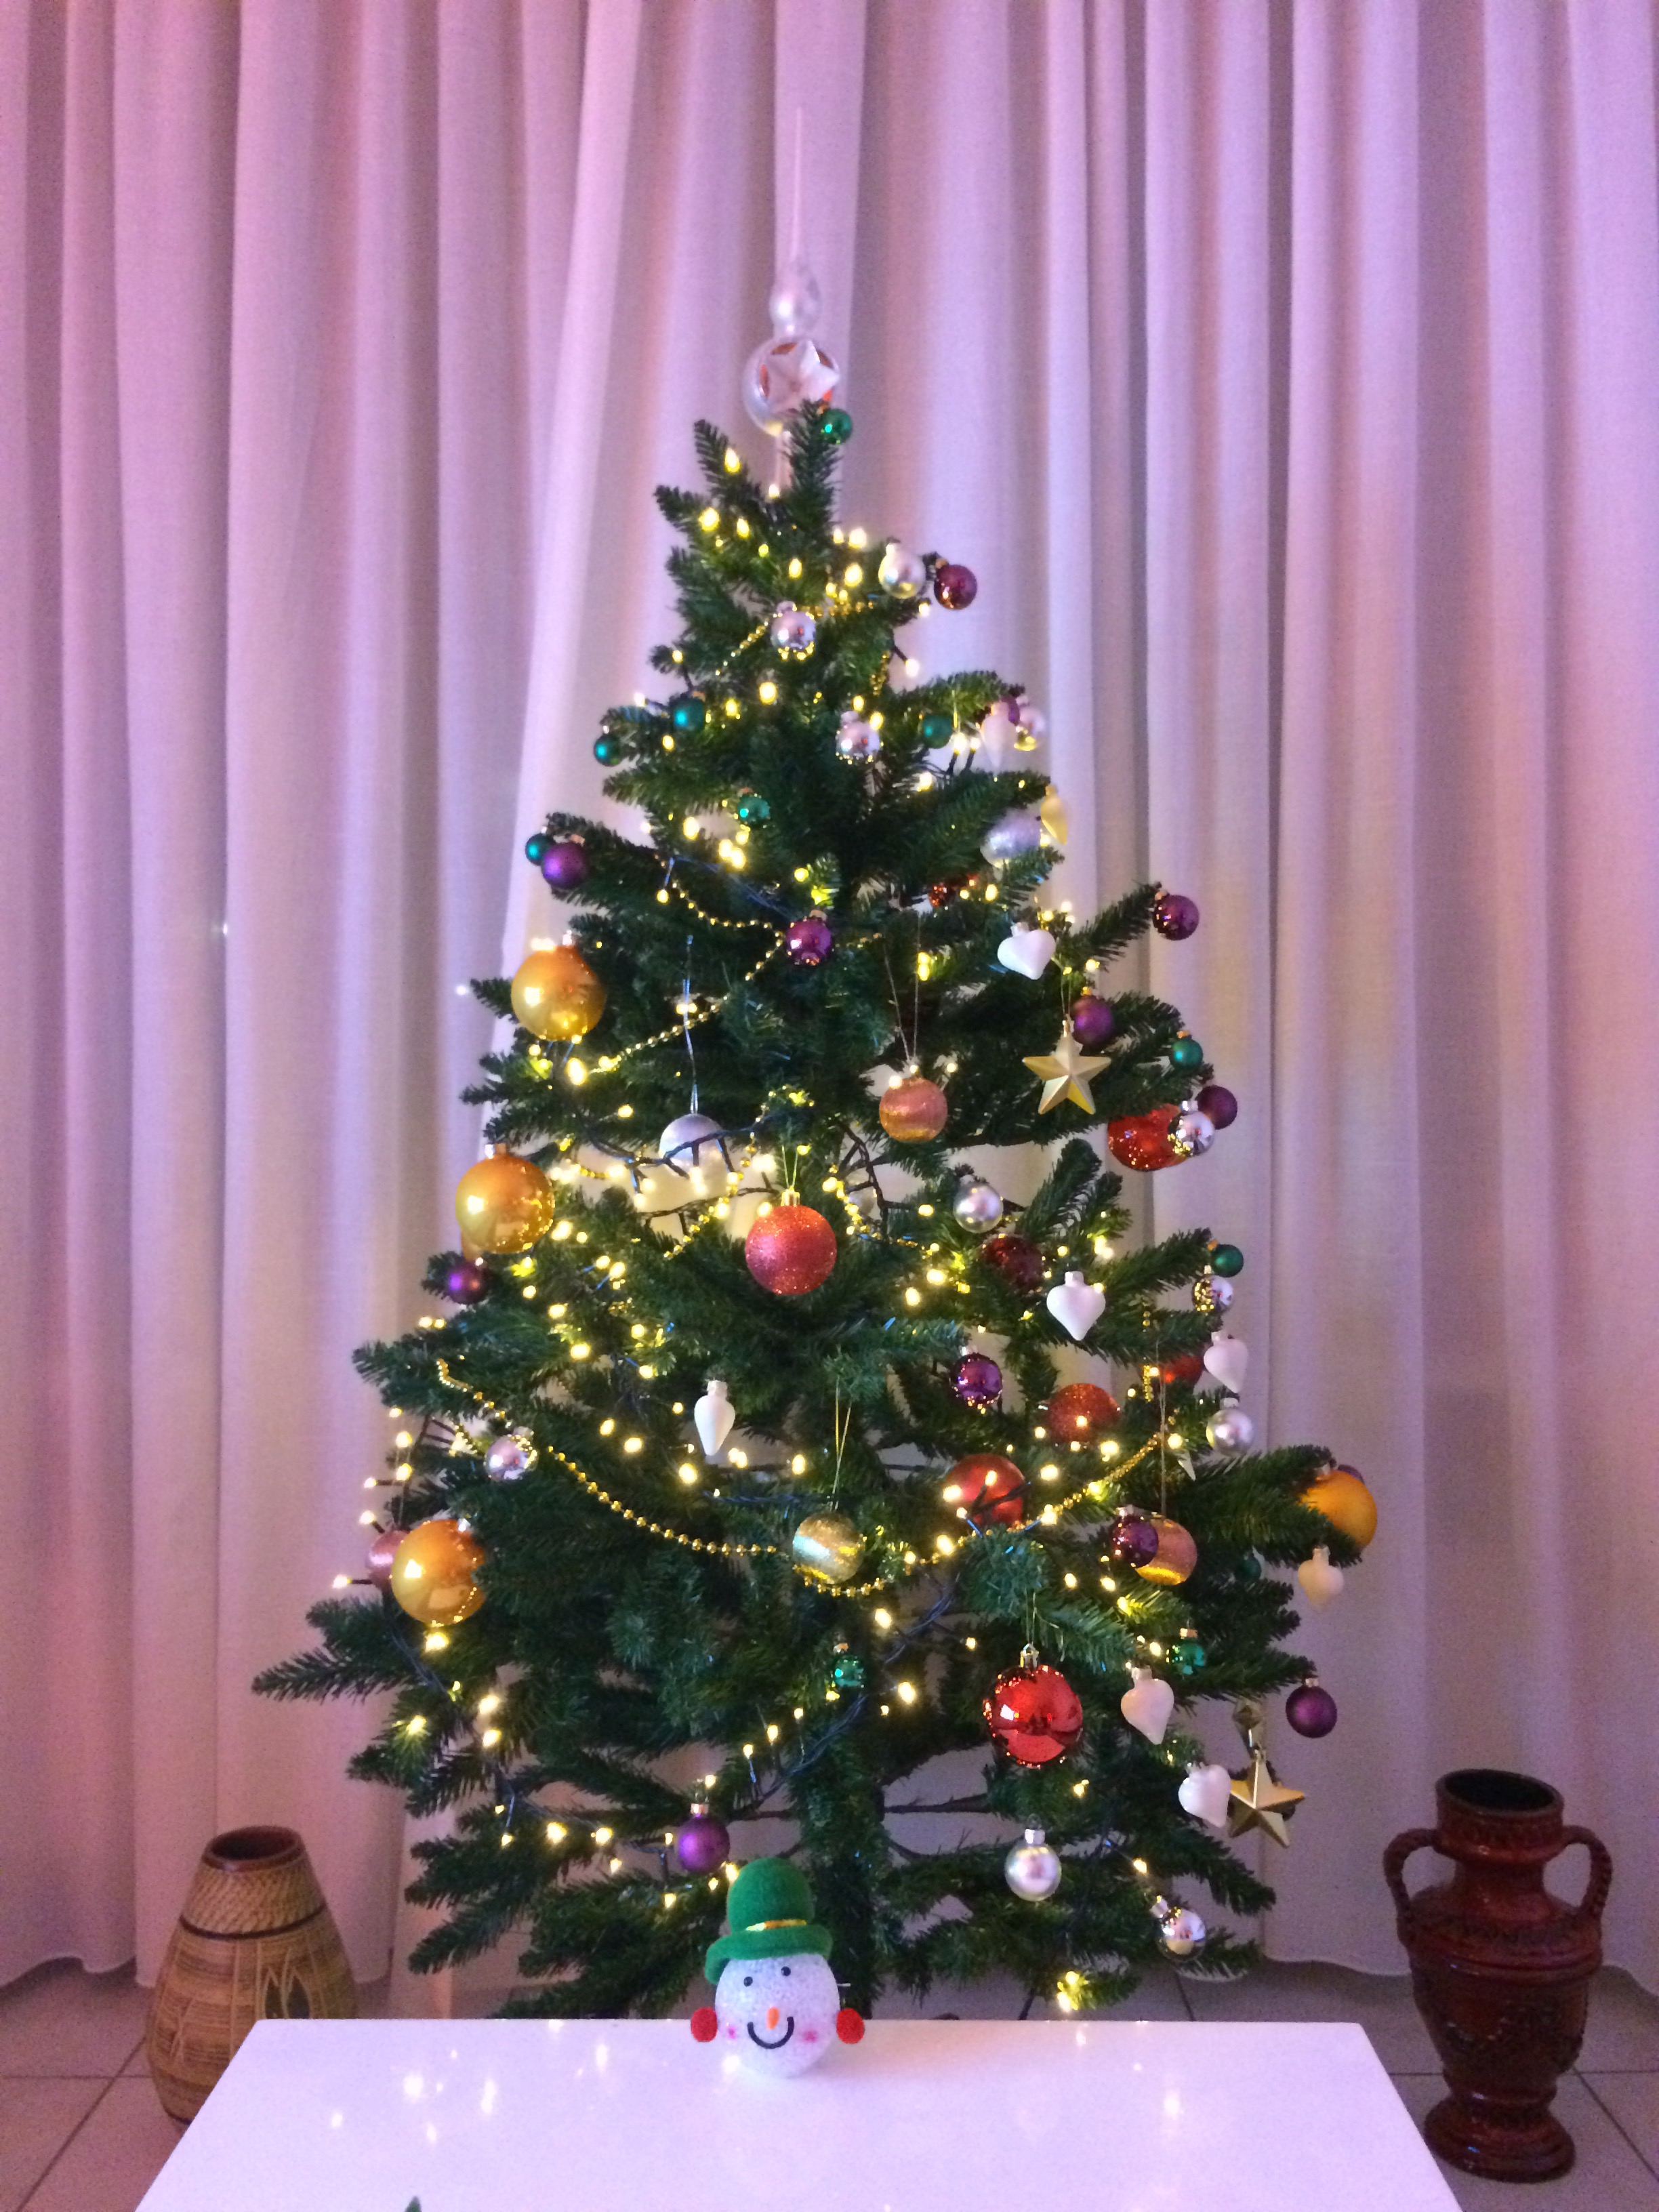 Pohon Natal di rumah *muncul lagi😅